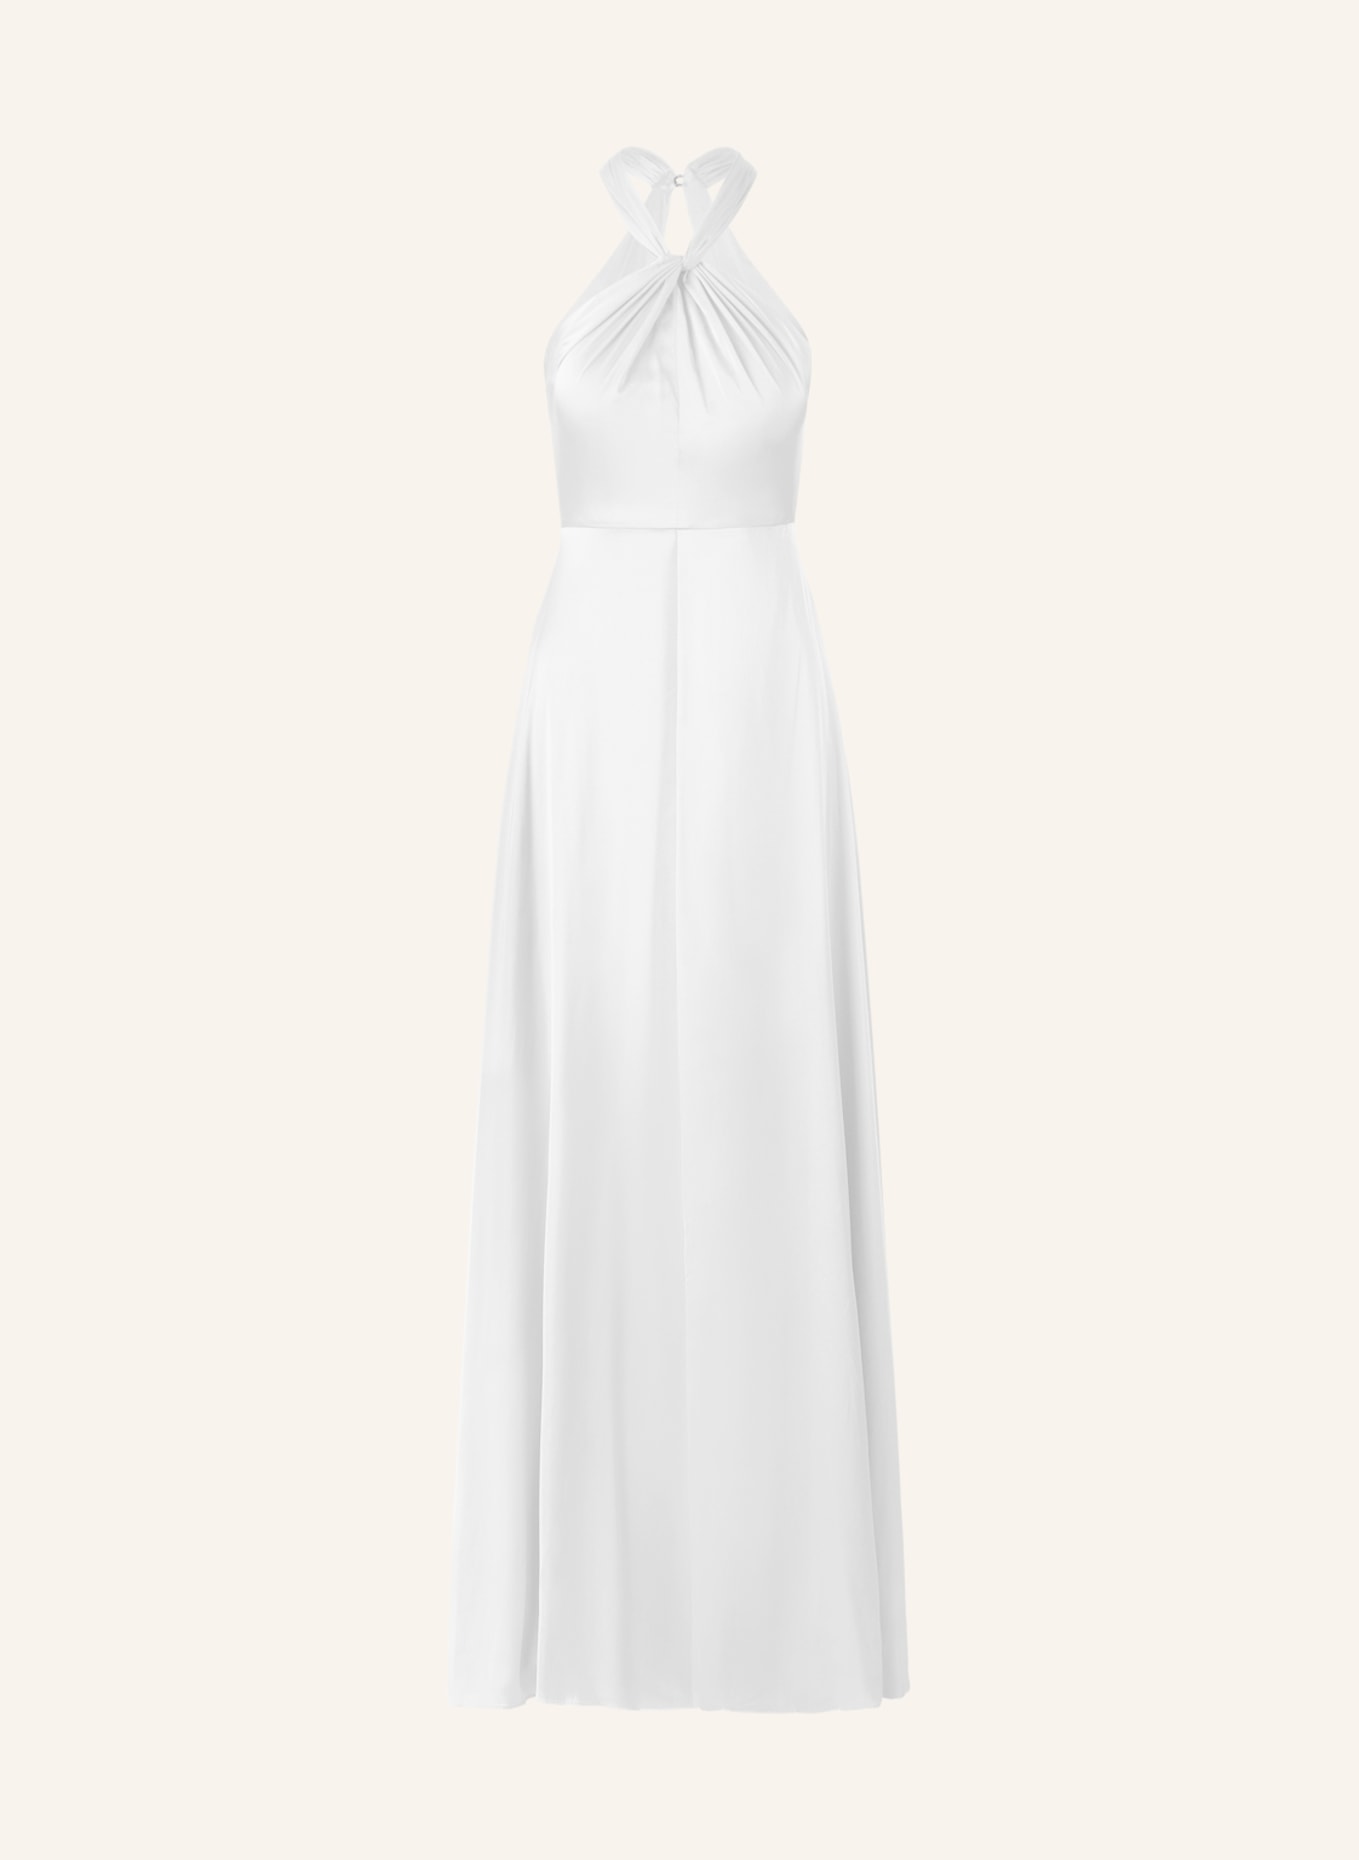 APART Kleid, Farbe: WEISS (Bild 1)